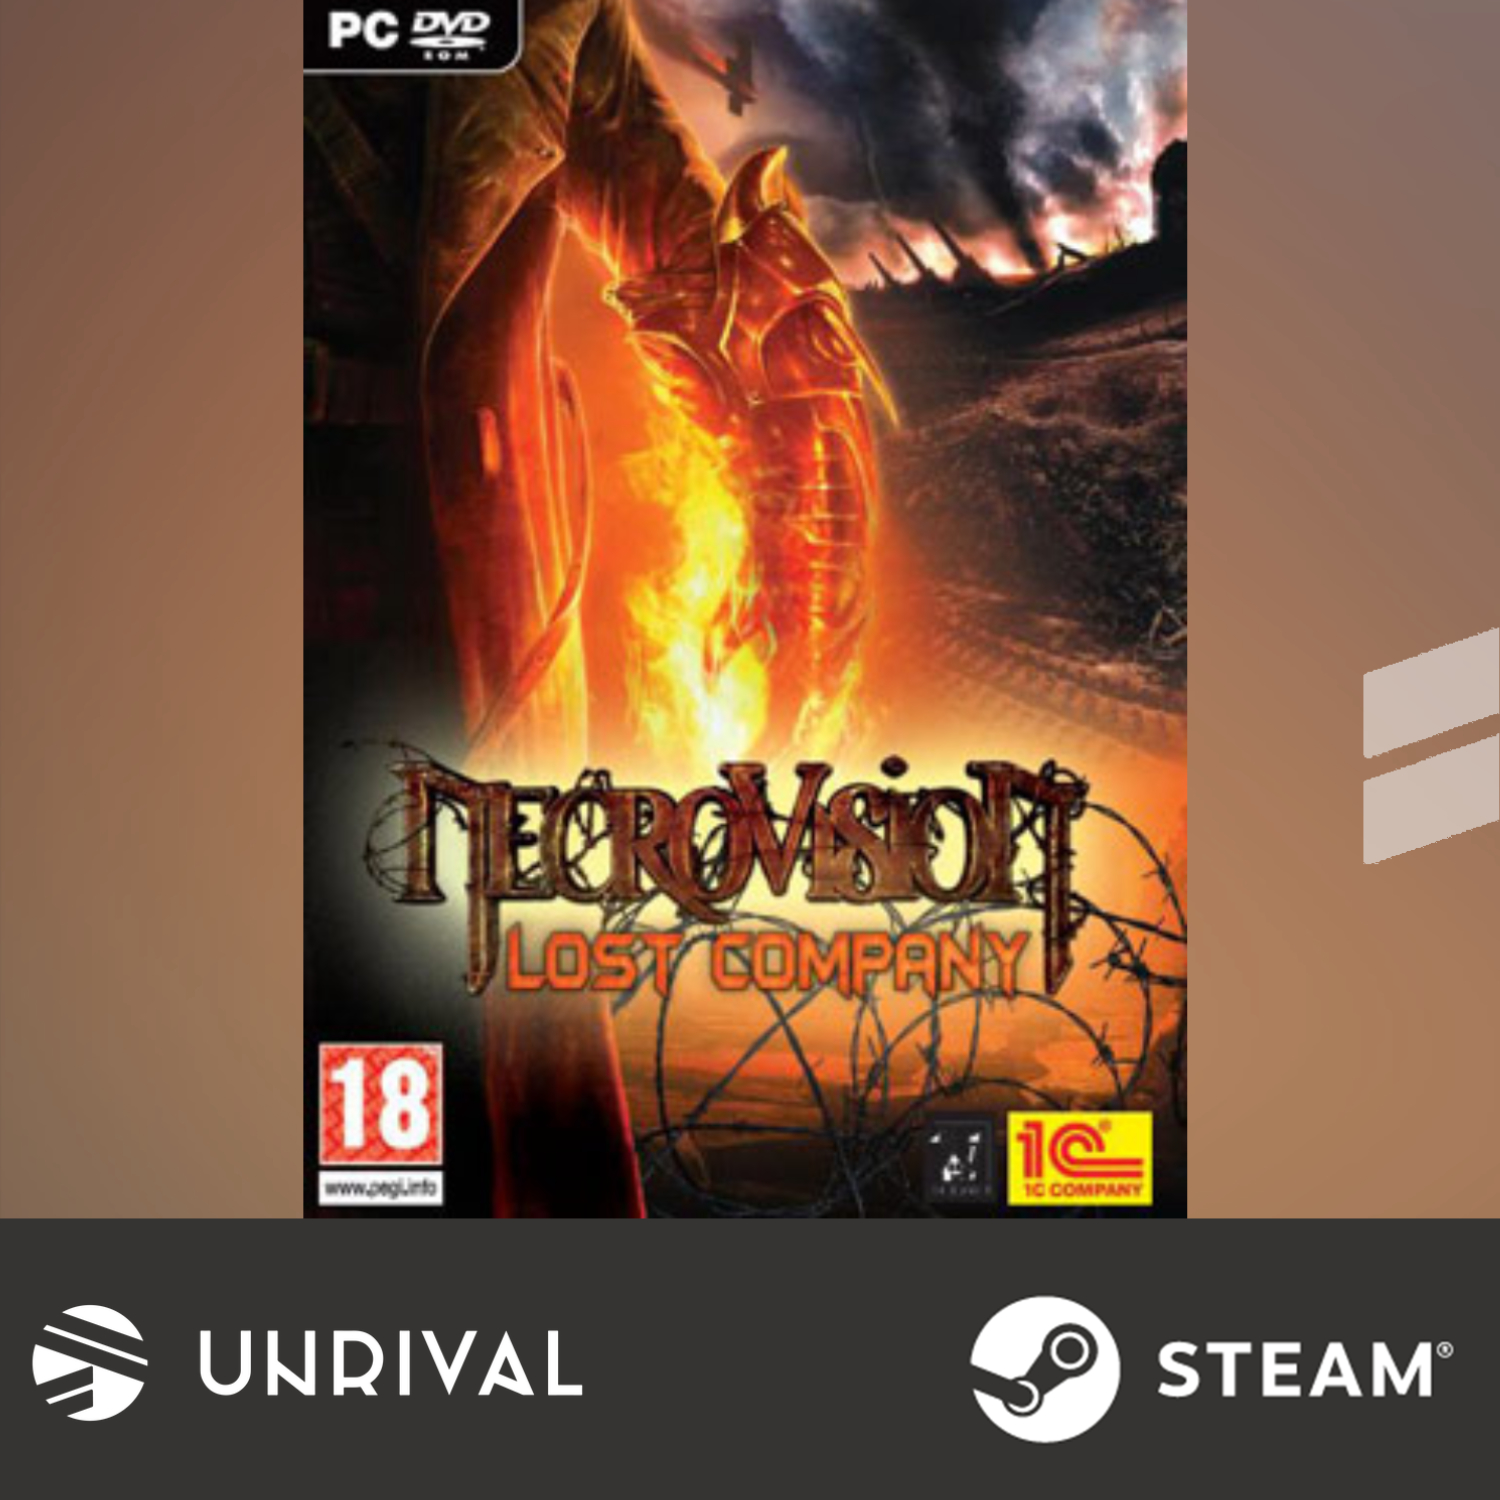 NecroVision: The Lost Company PC Digital Download Game - Unrival